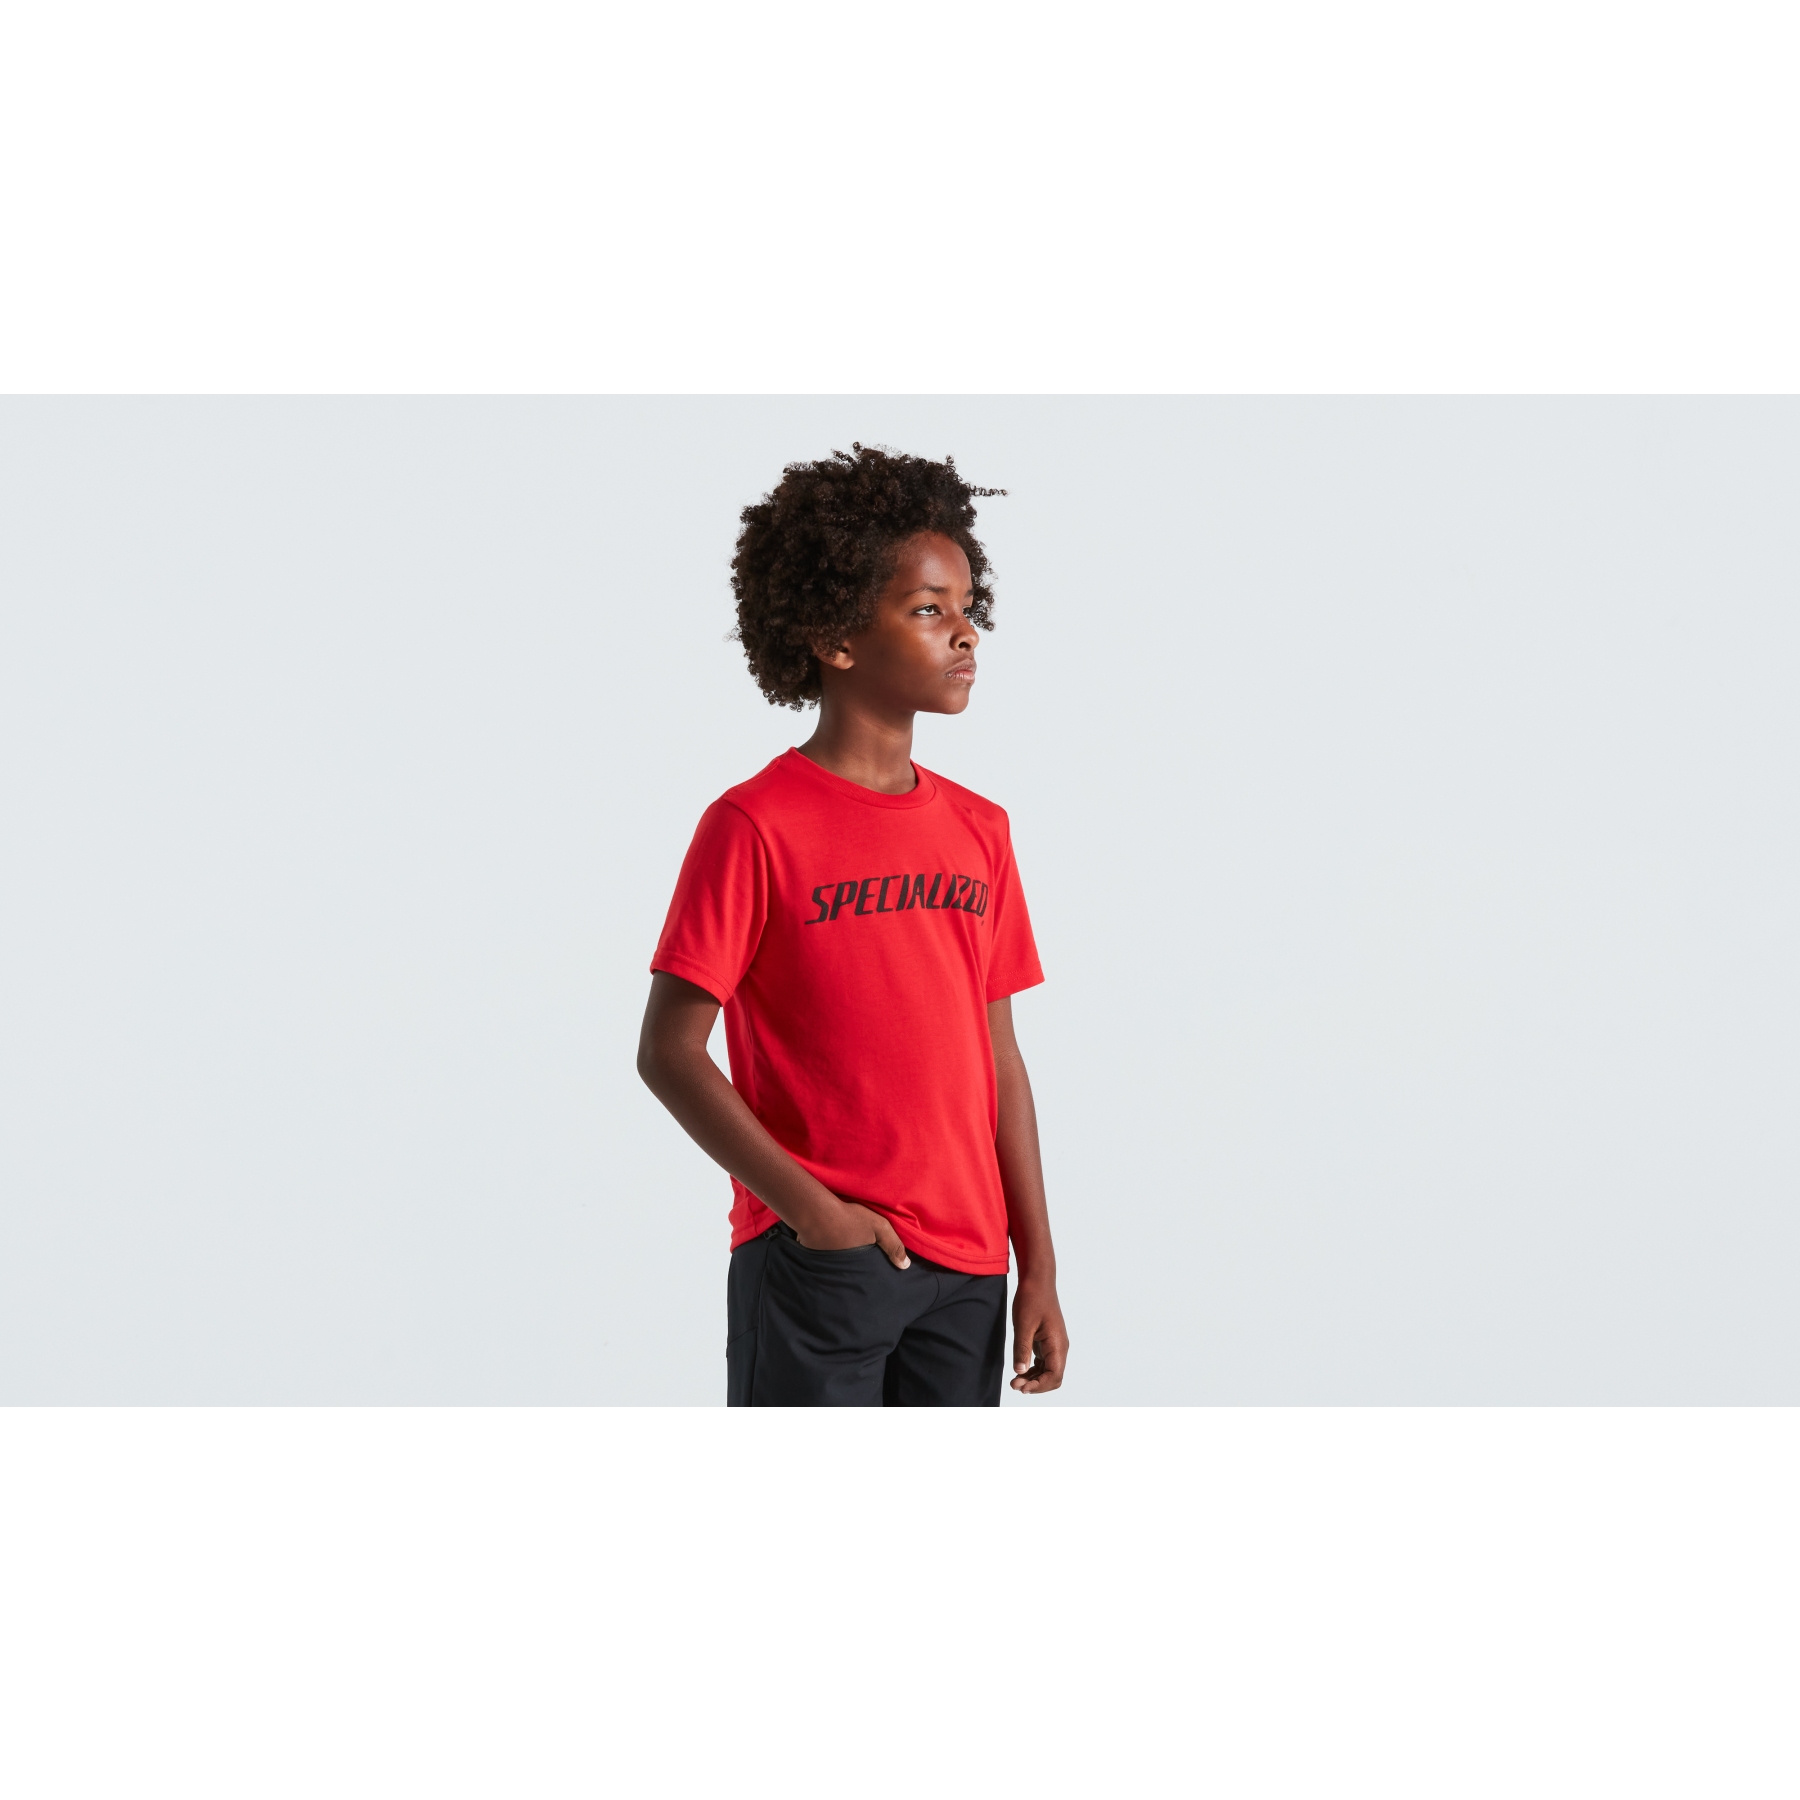 BIKE24 Wordmark | T-Shirt Kinder flo Specialized - red